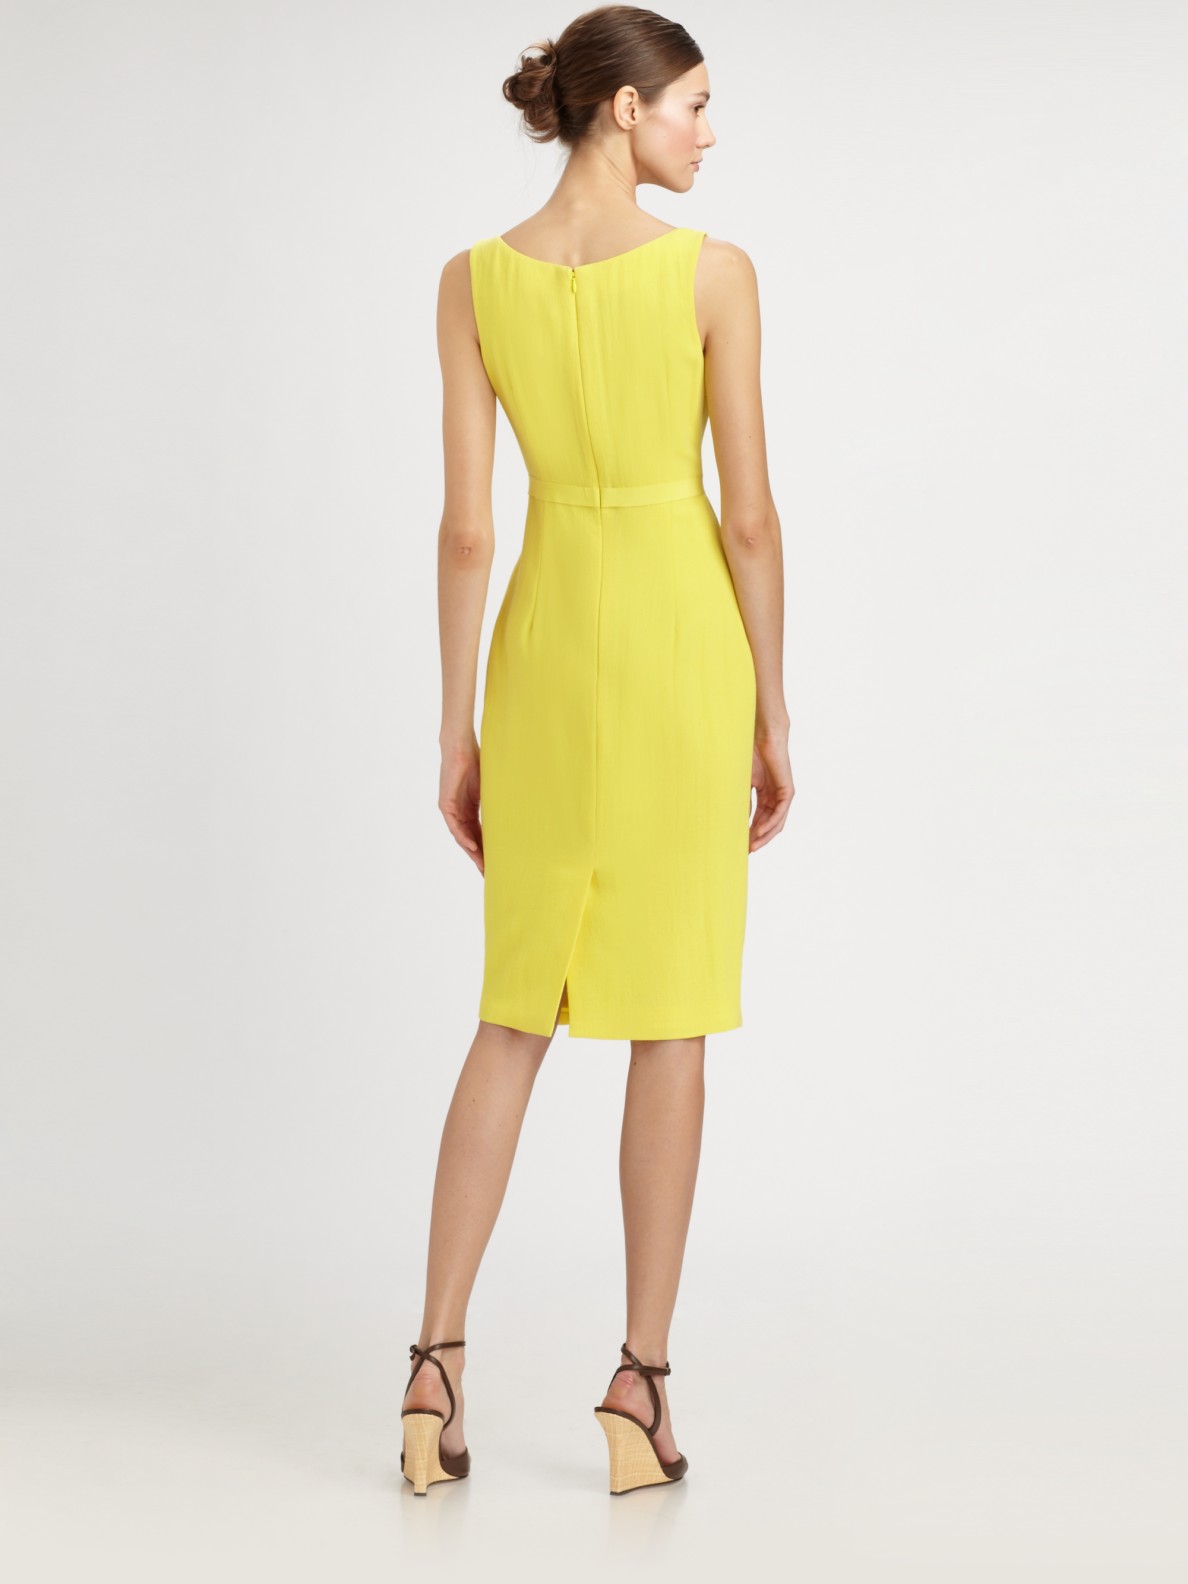 Lyst - Carolina Herrera Ruffled Crepe Dress in Yellow